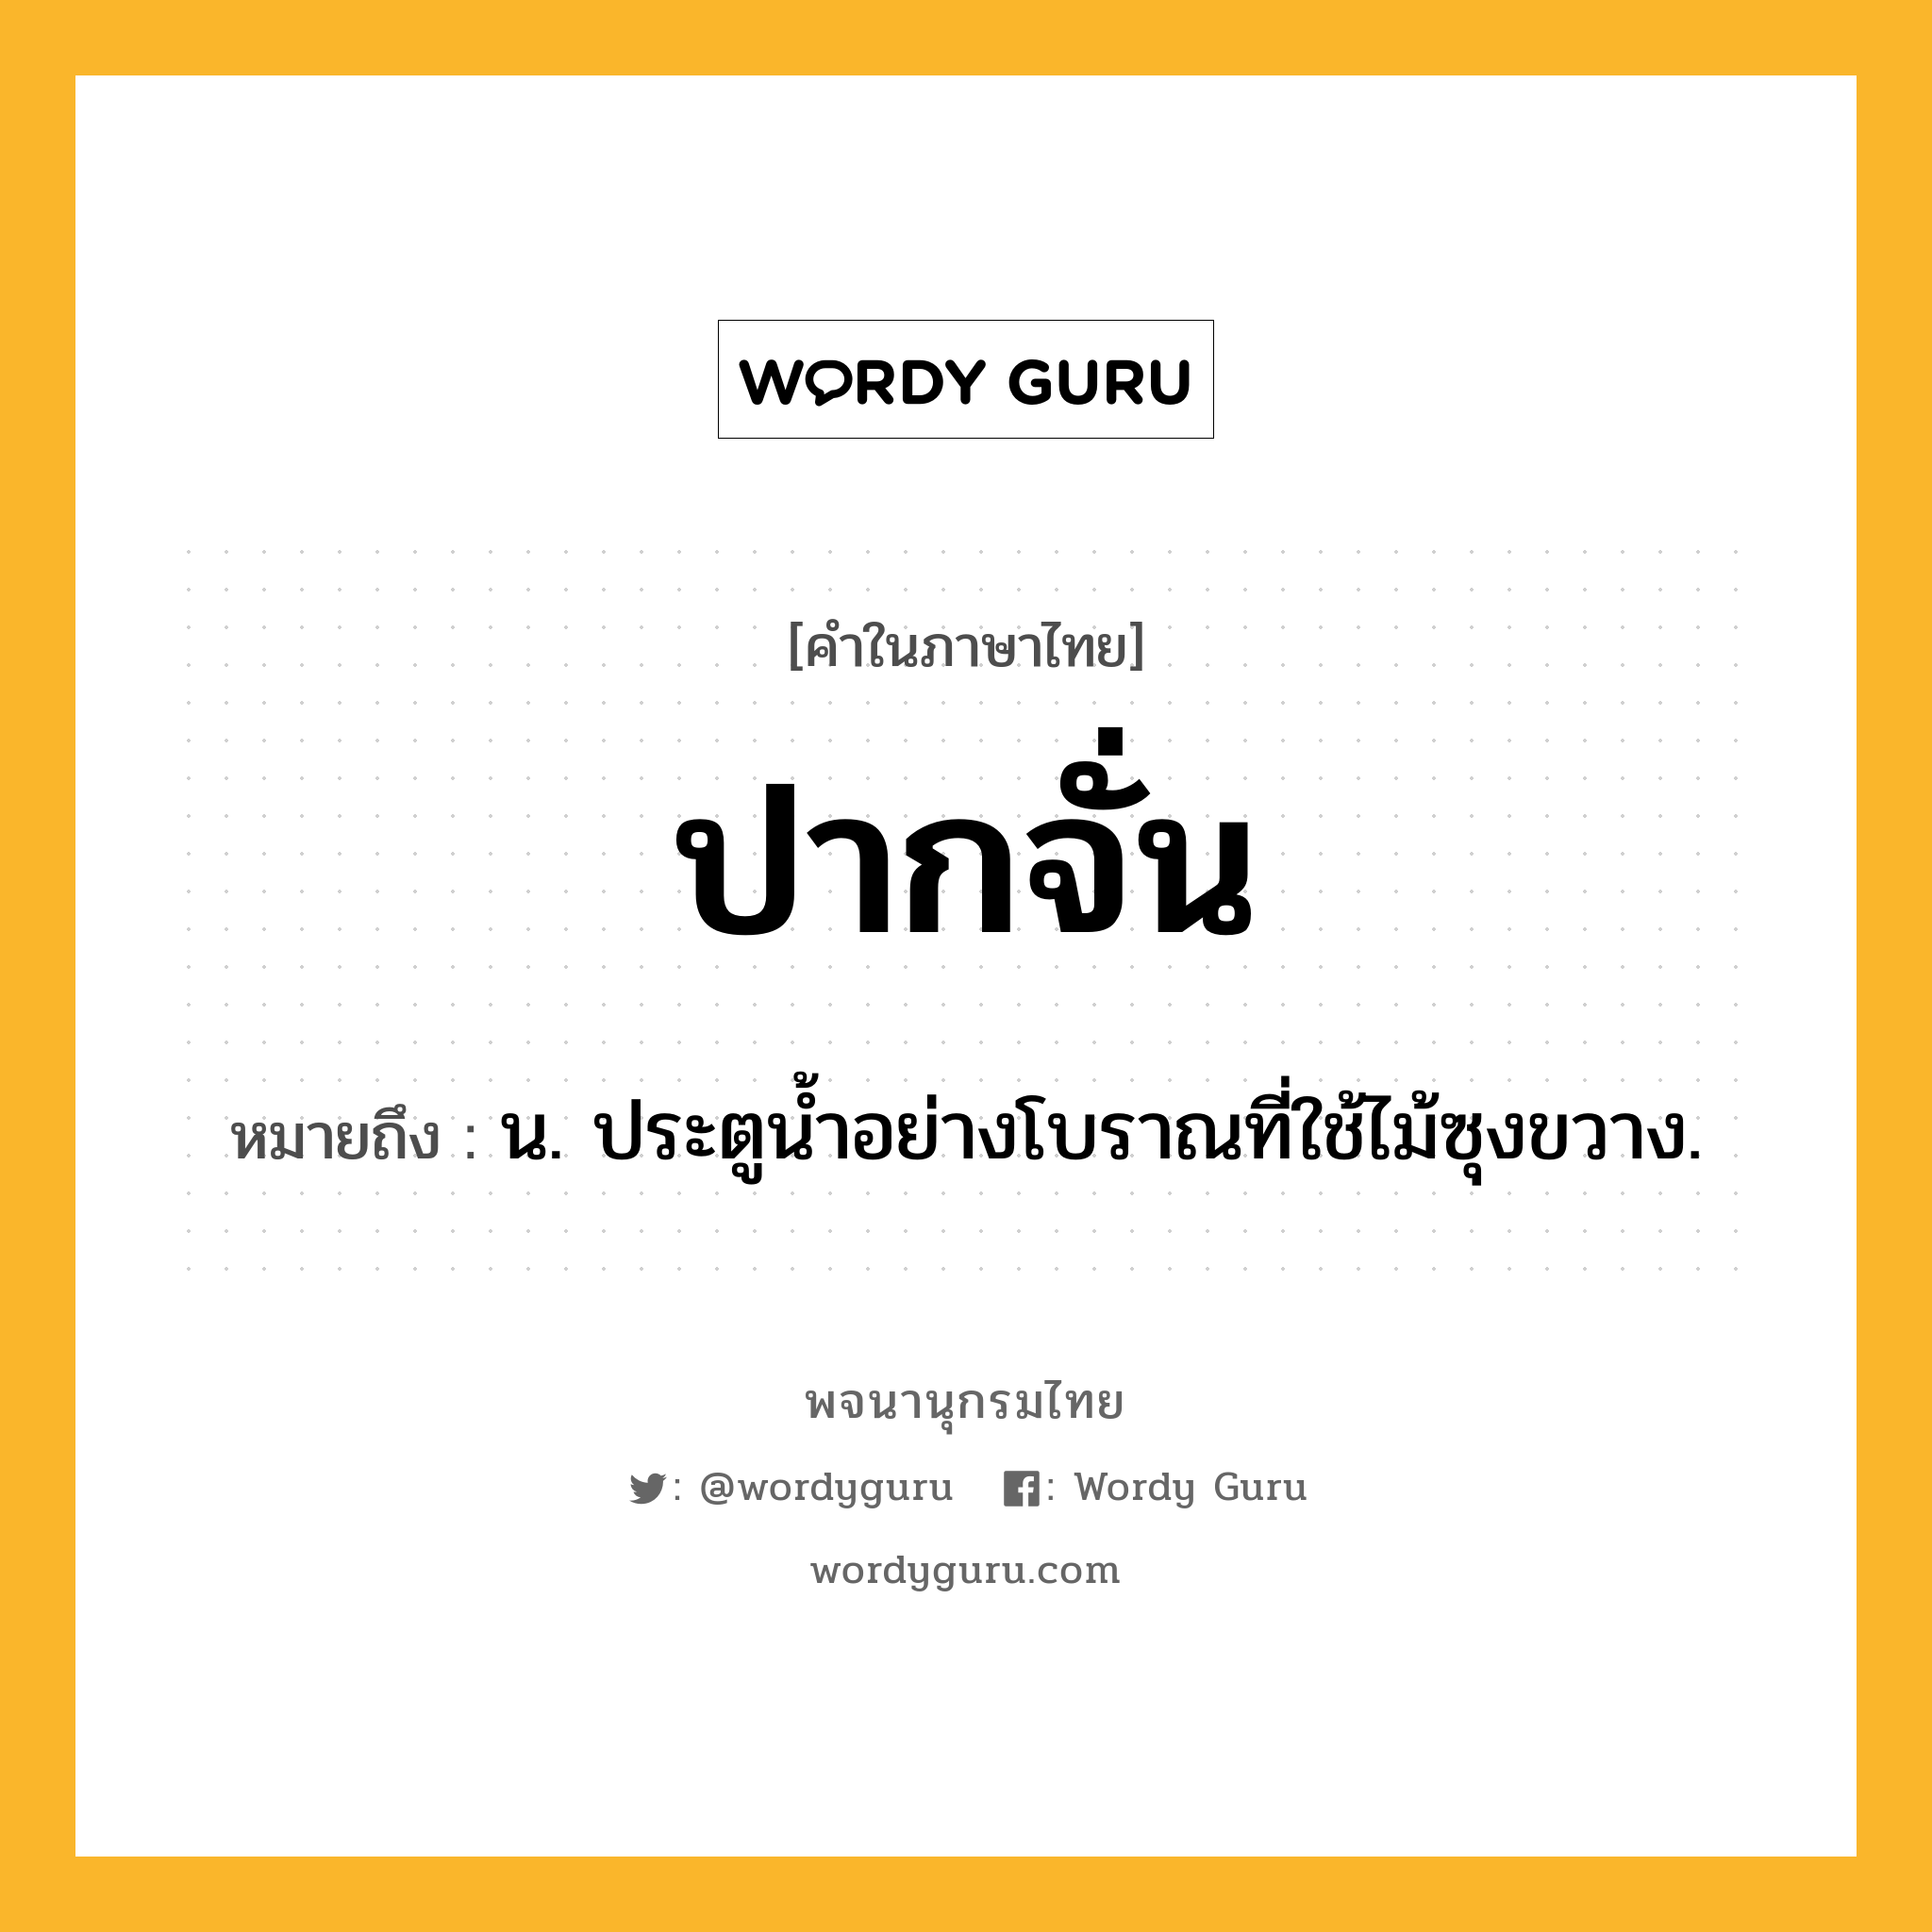 ปากจั่น ความหมาย หมายถึงอะไร?, คำในภาษาไทย ปากจั่น หมายถึง น. ประตูน้ำอย่างโบราณที่ใช้ไม้ซุงขวาง.